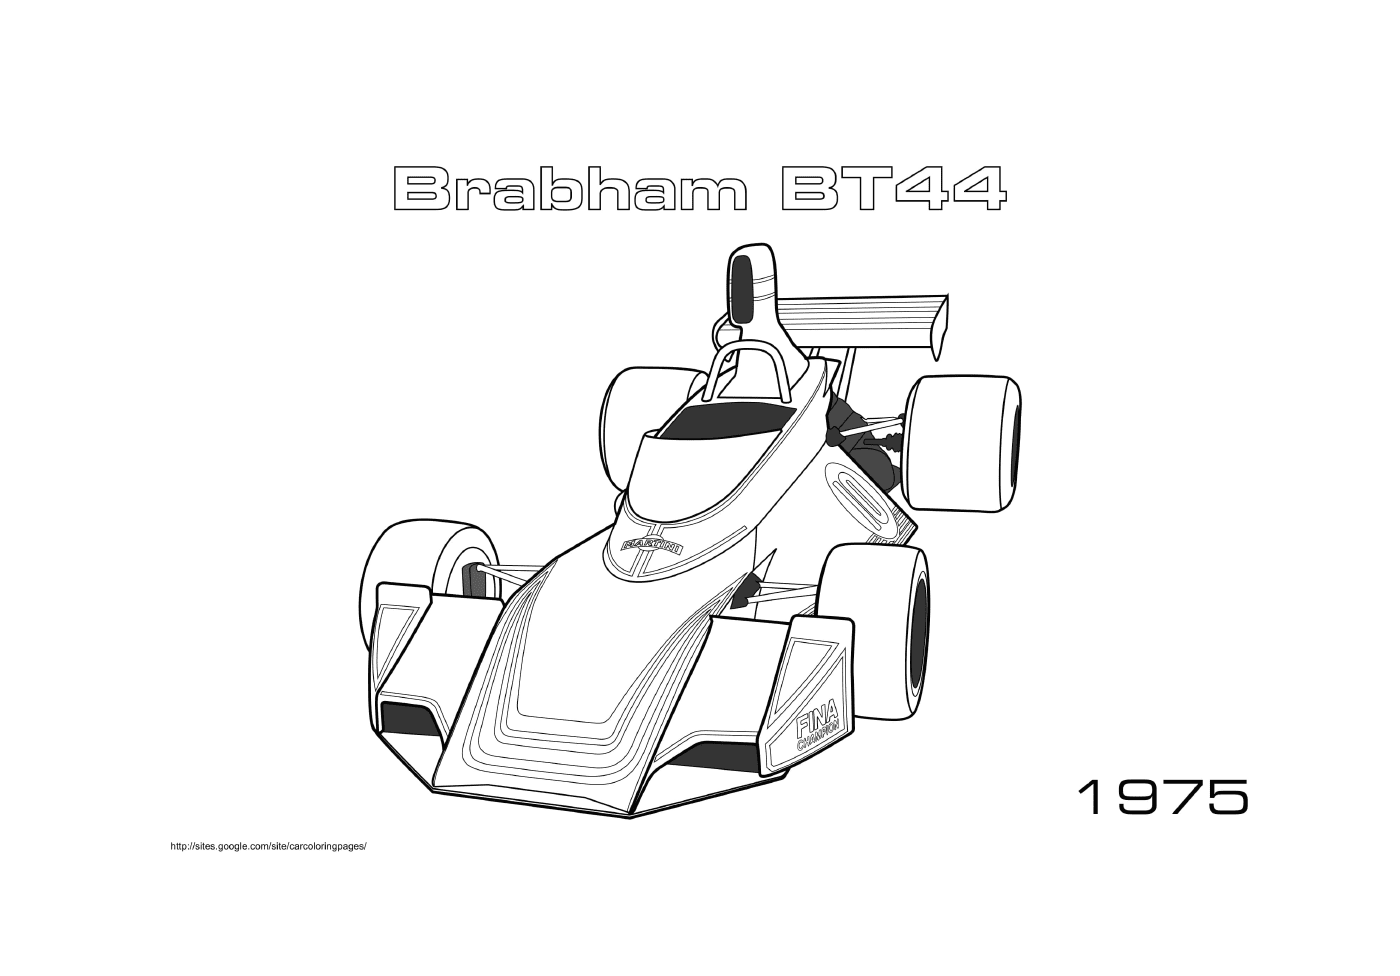  Brabham coche de carreras Bt44 1975 en acción 